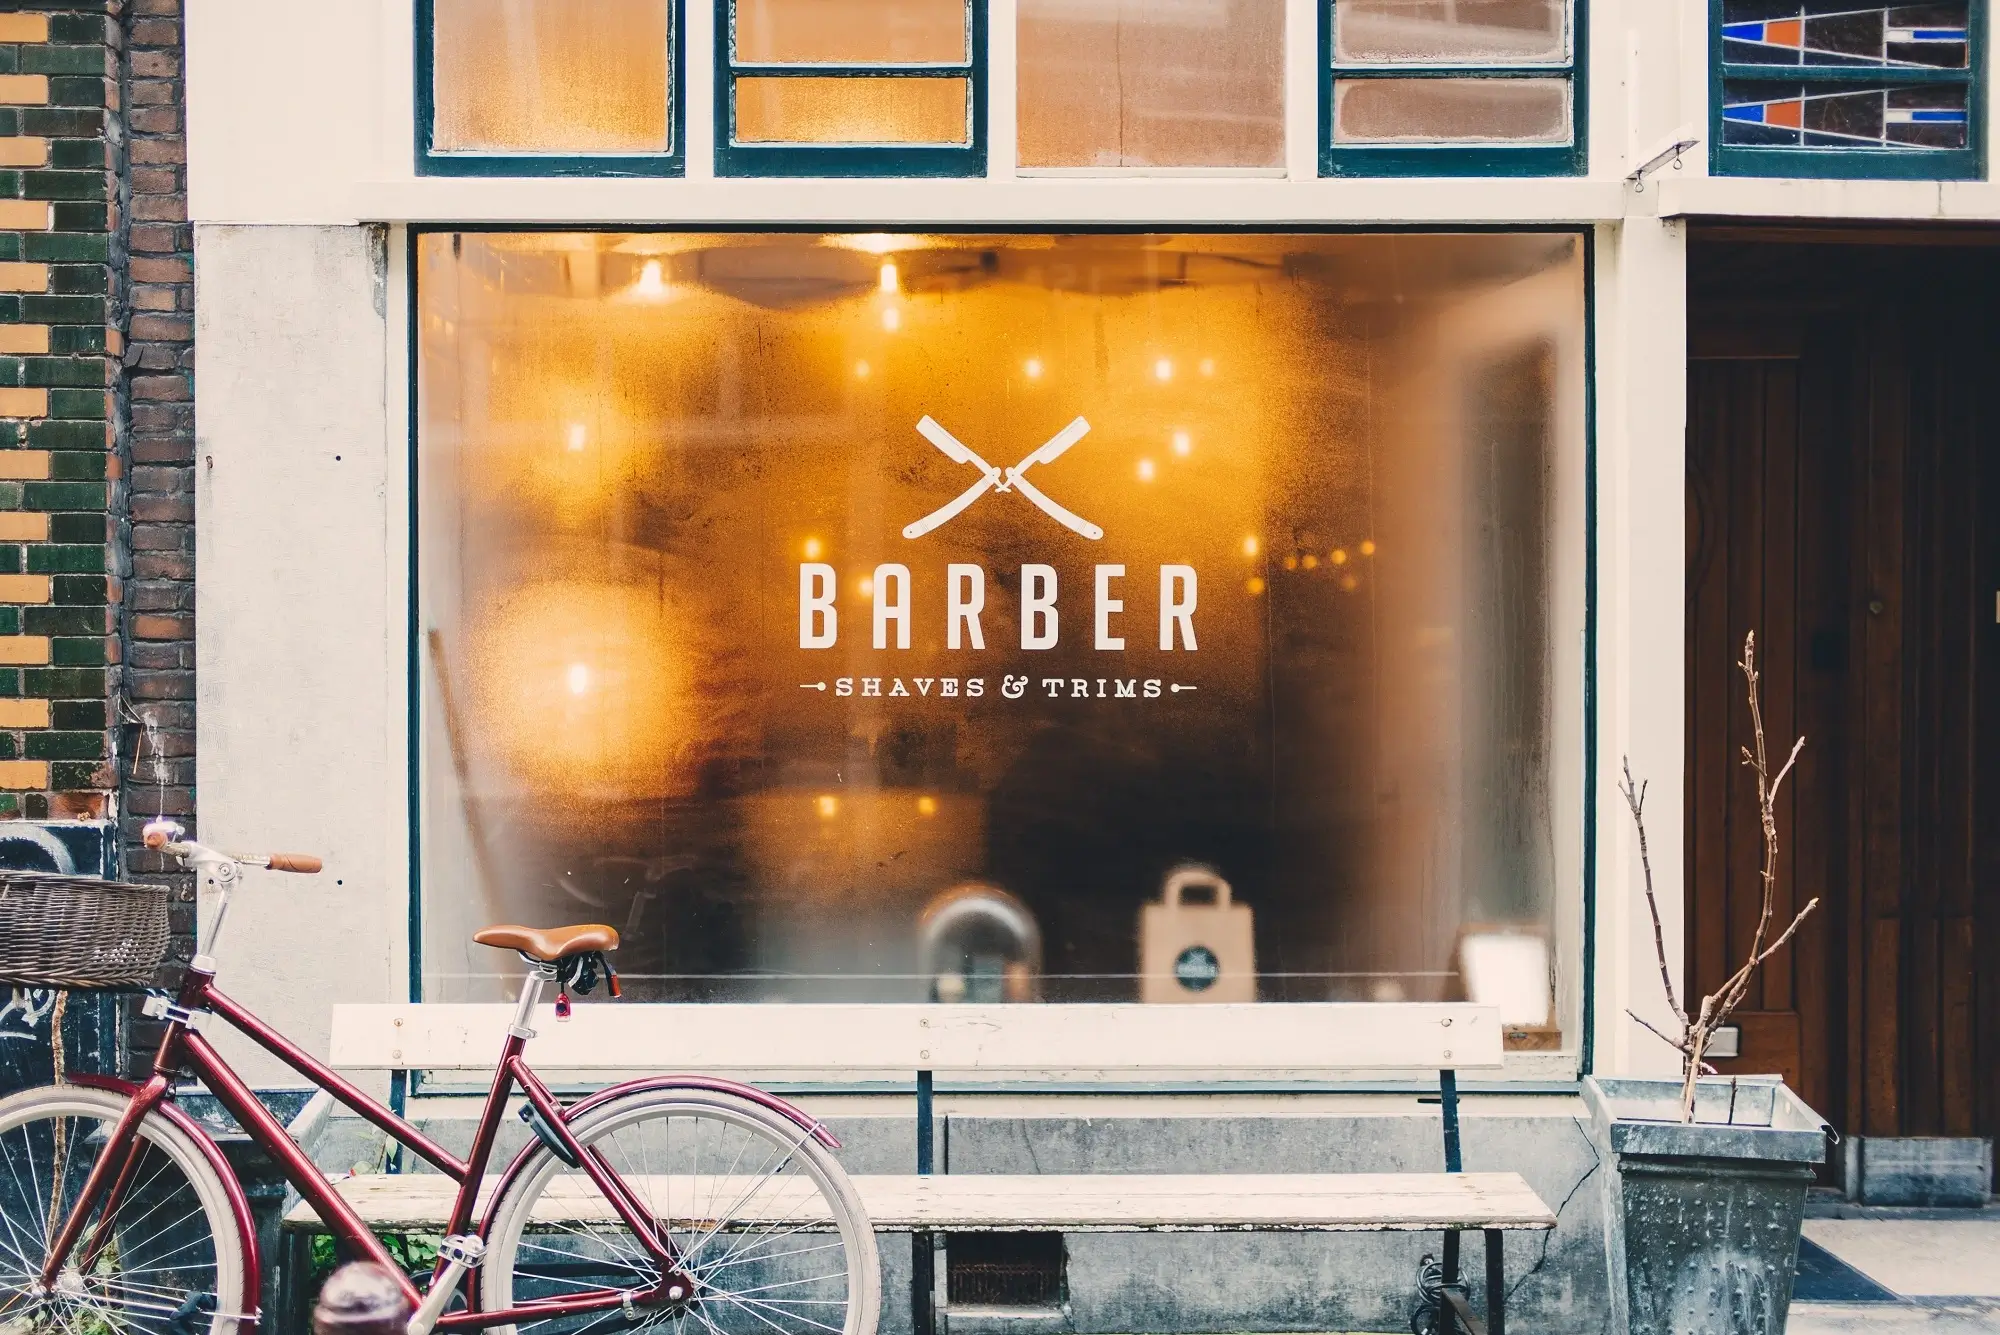 A barbershop storefront.